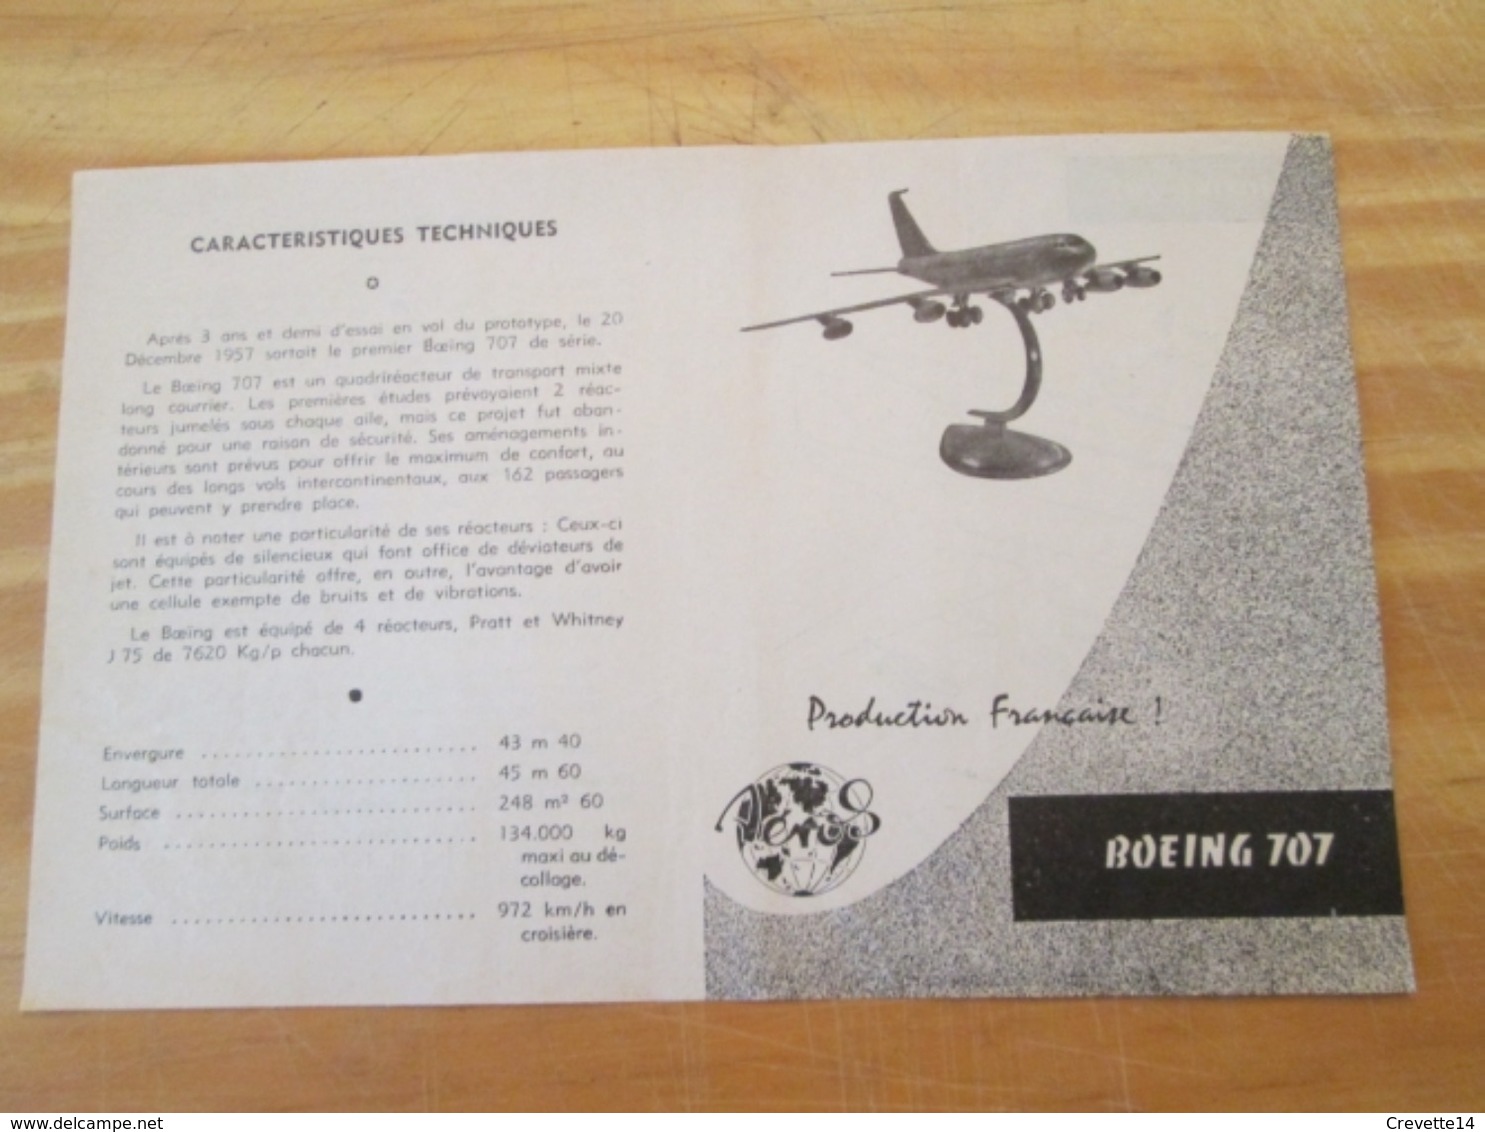 Rare : NOTICE DE MONTAGE Années 60 Pour Maquette Plastique AEROS : BOEING 707 - Vliegtuigen